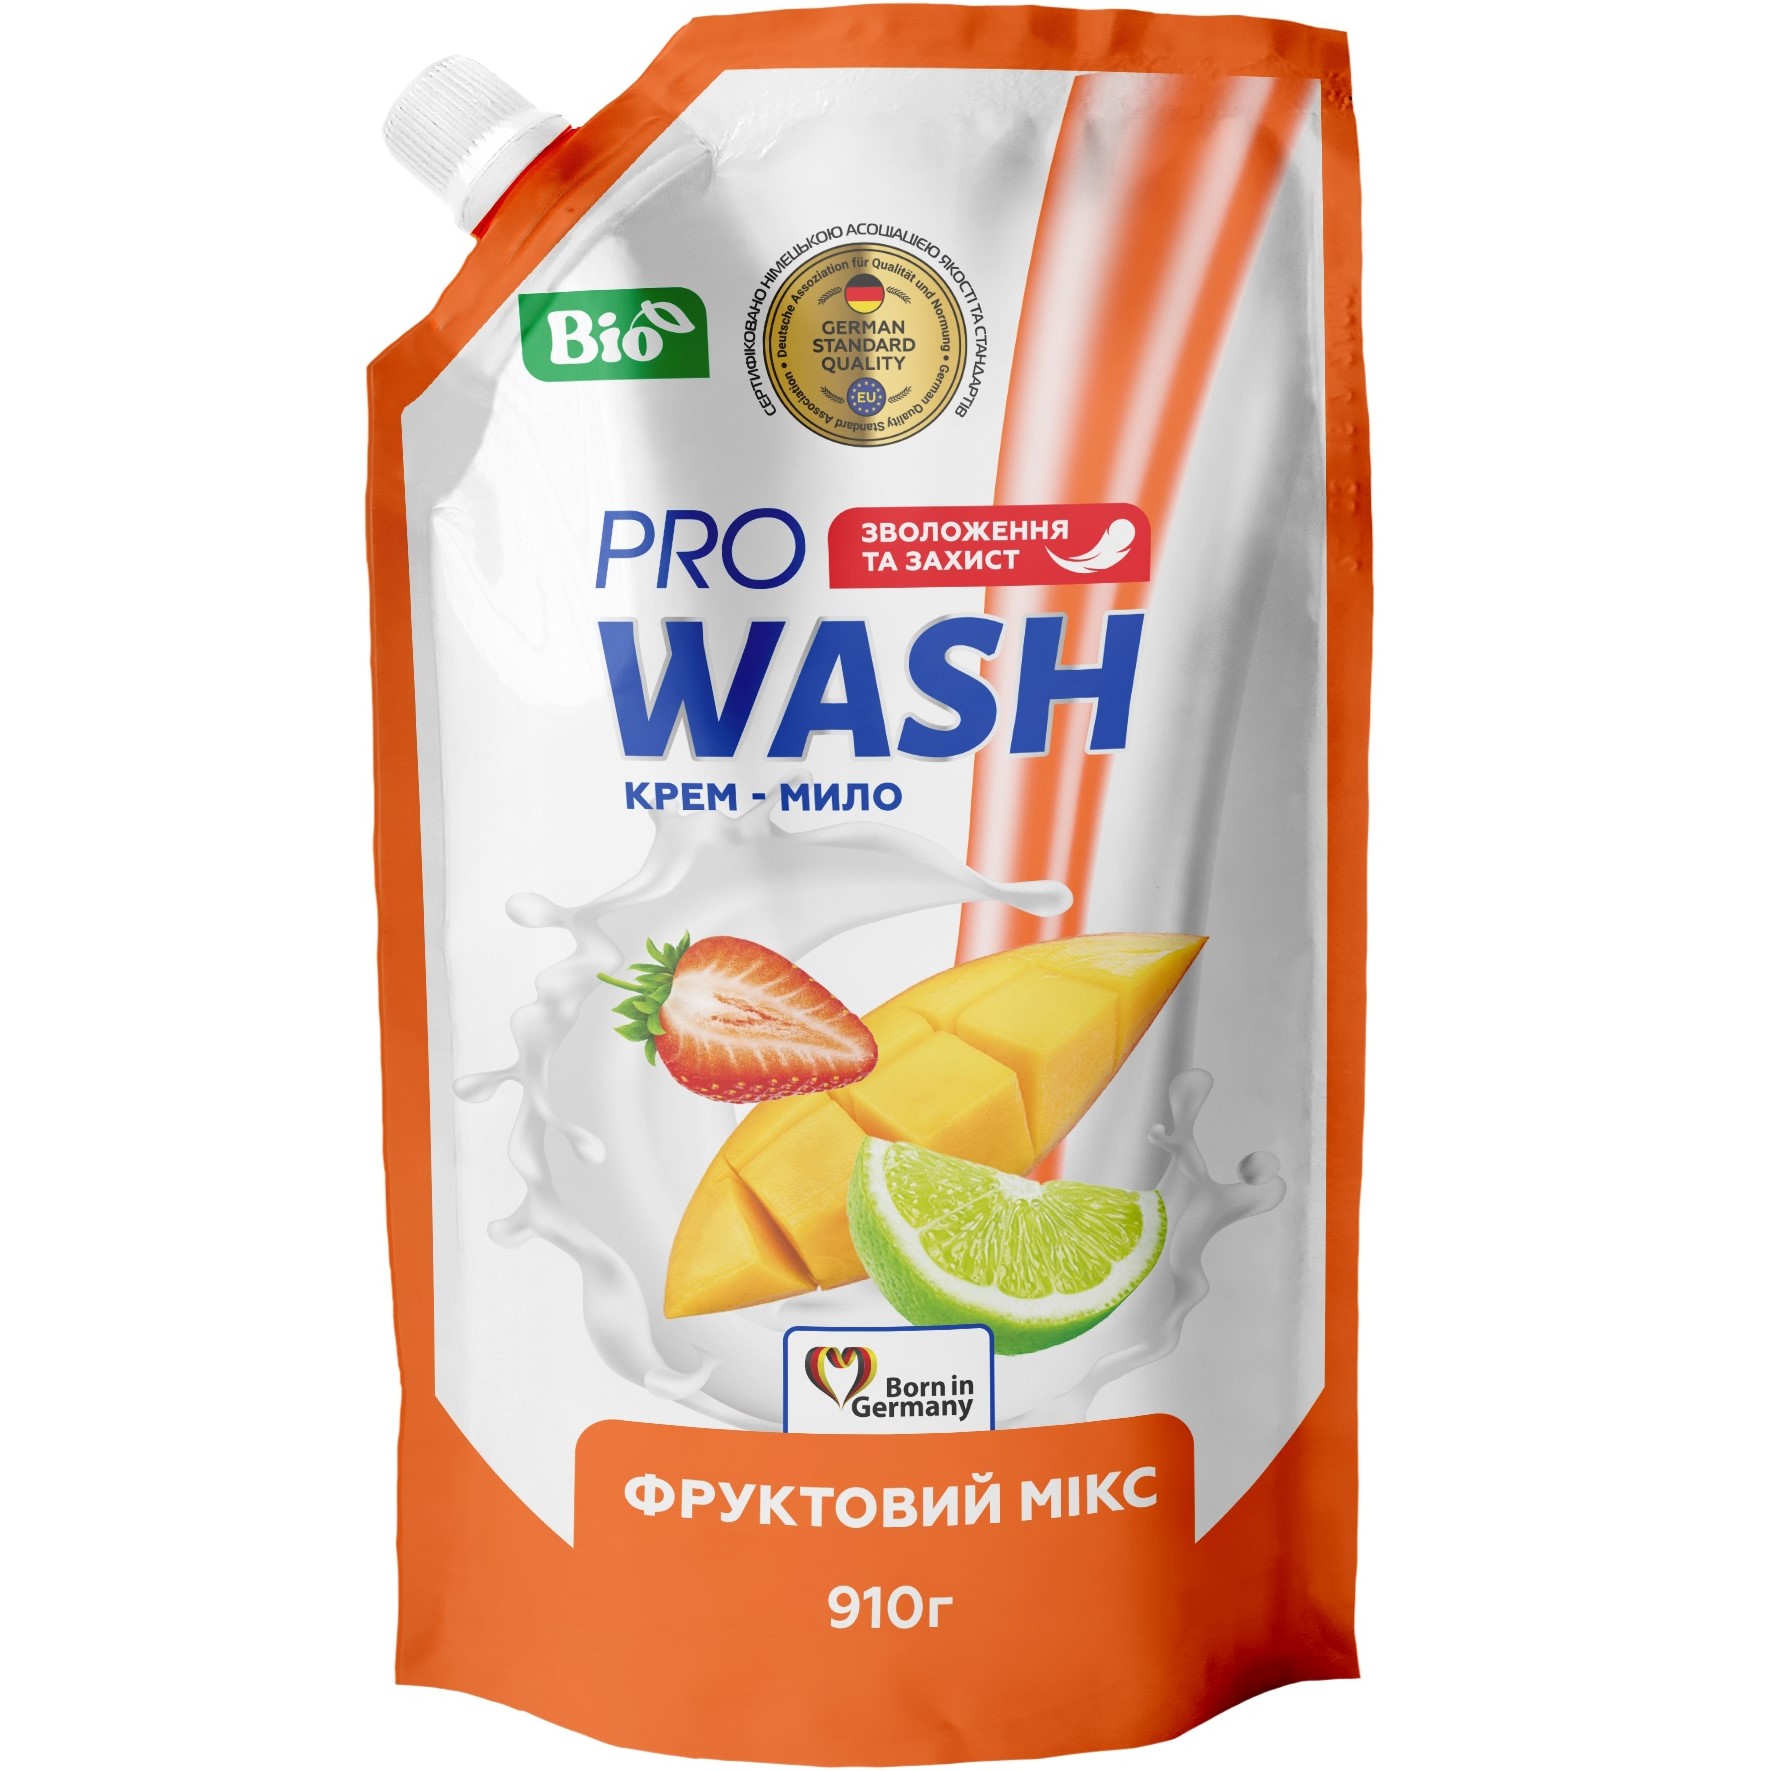 Жидкое крем-мыло Pro Wash, фруктовый микс, 910 г - фото 1